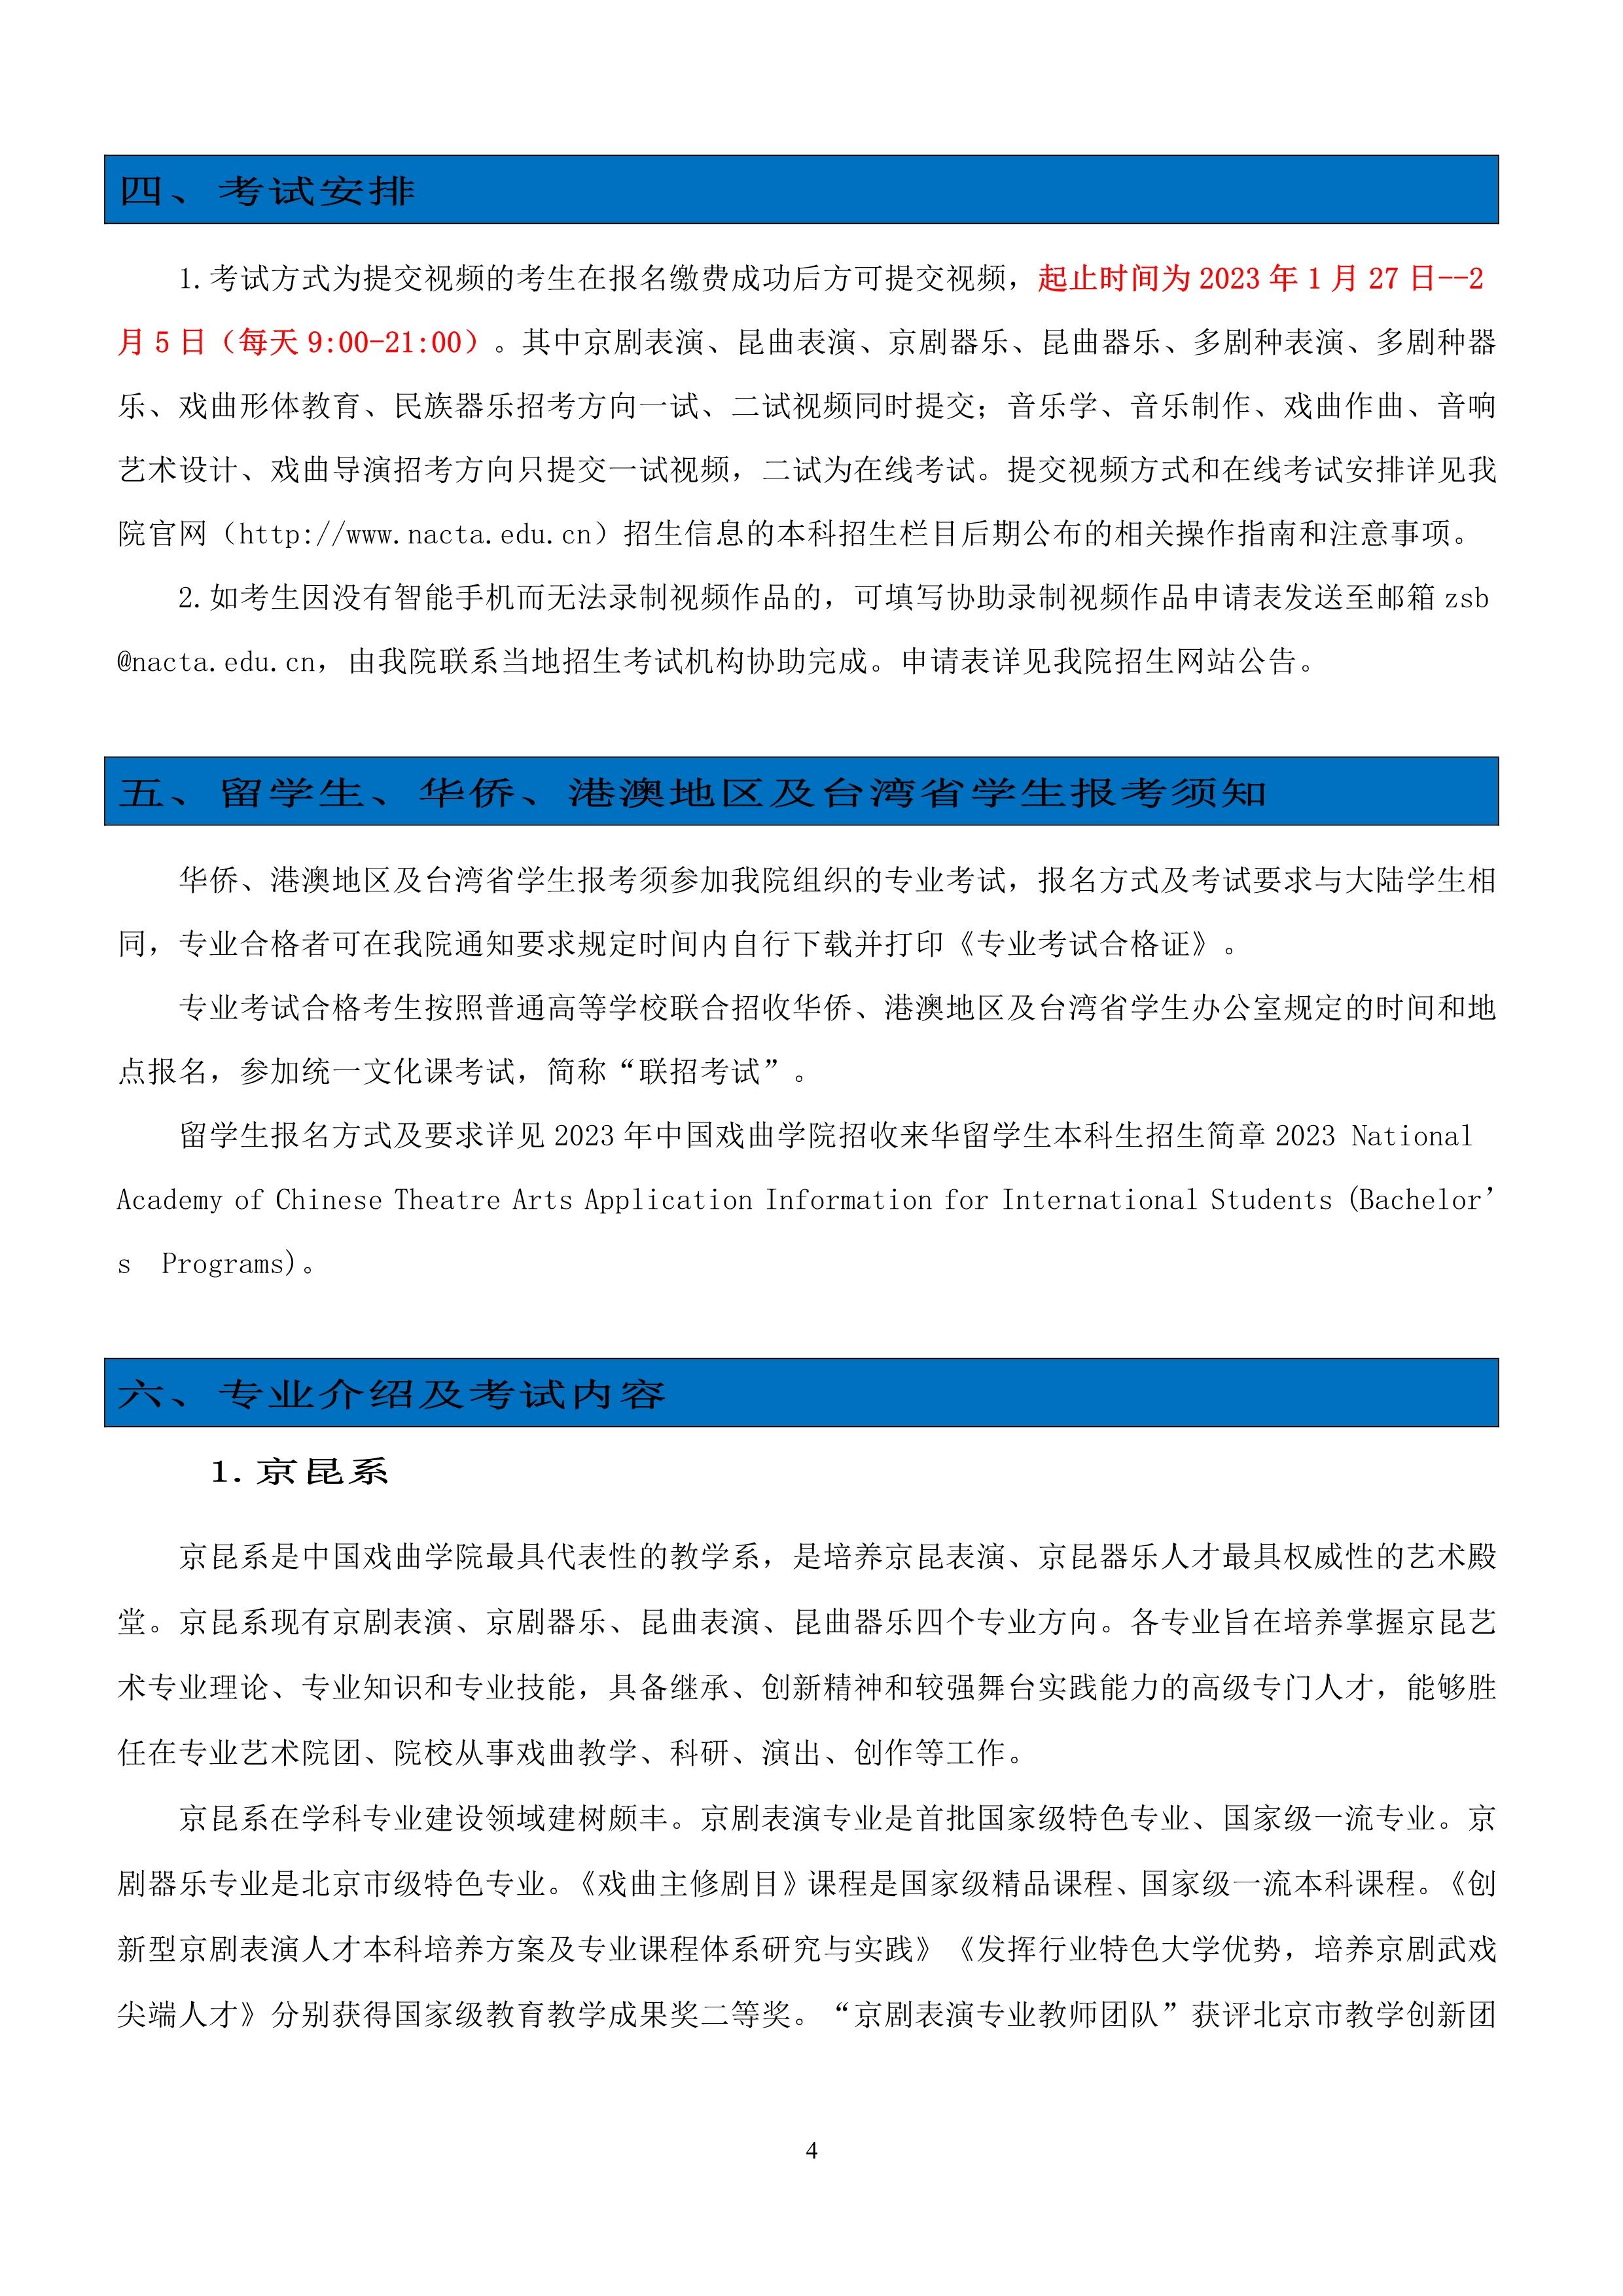 中国戏曲学院2023年本科招生简章_4.jpg